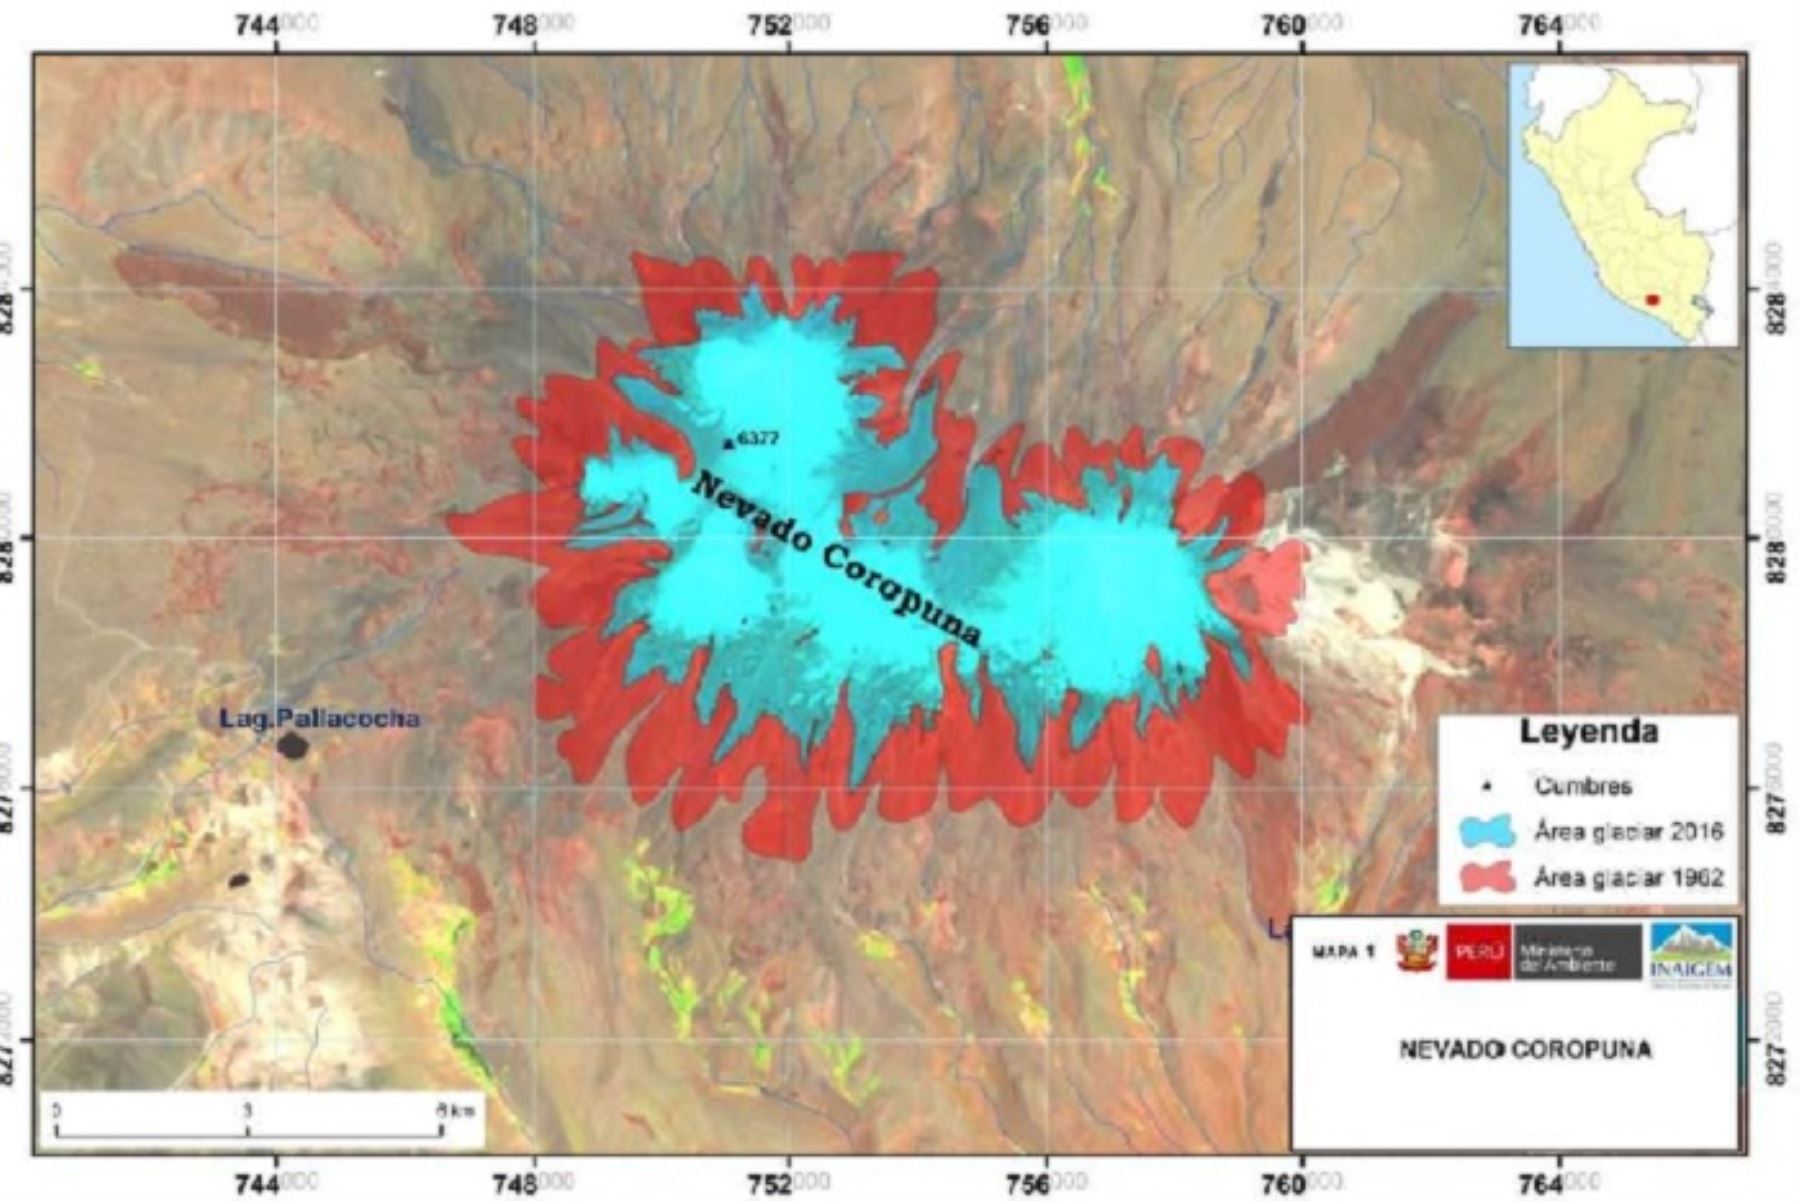 Arequipa: Inaigem inicia expedición científica al volcán Coropuna